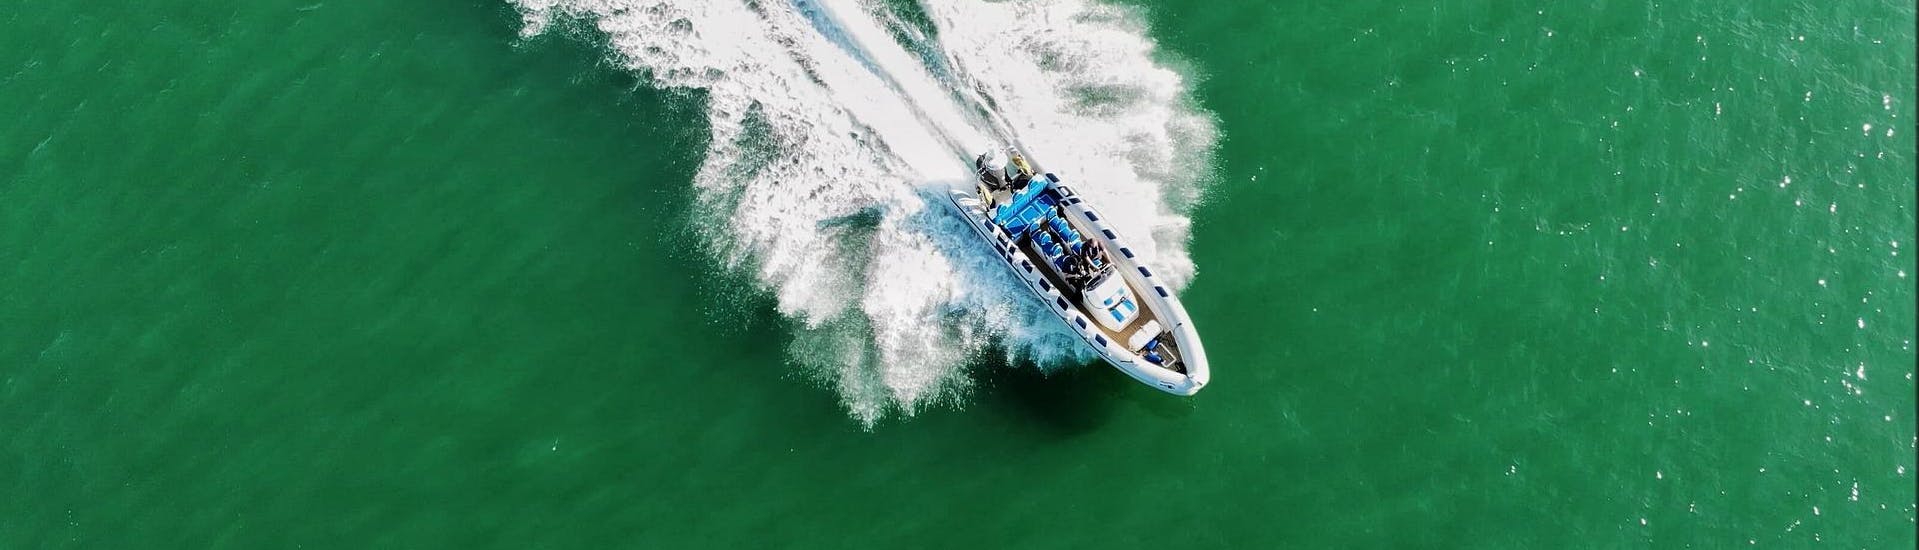 Ein RIB-Boot bei hoher Geschwindigkeit während einer RIB-Bootstour.